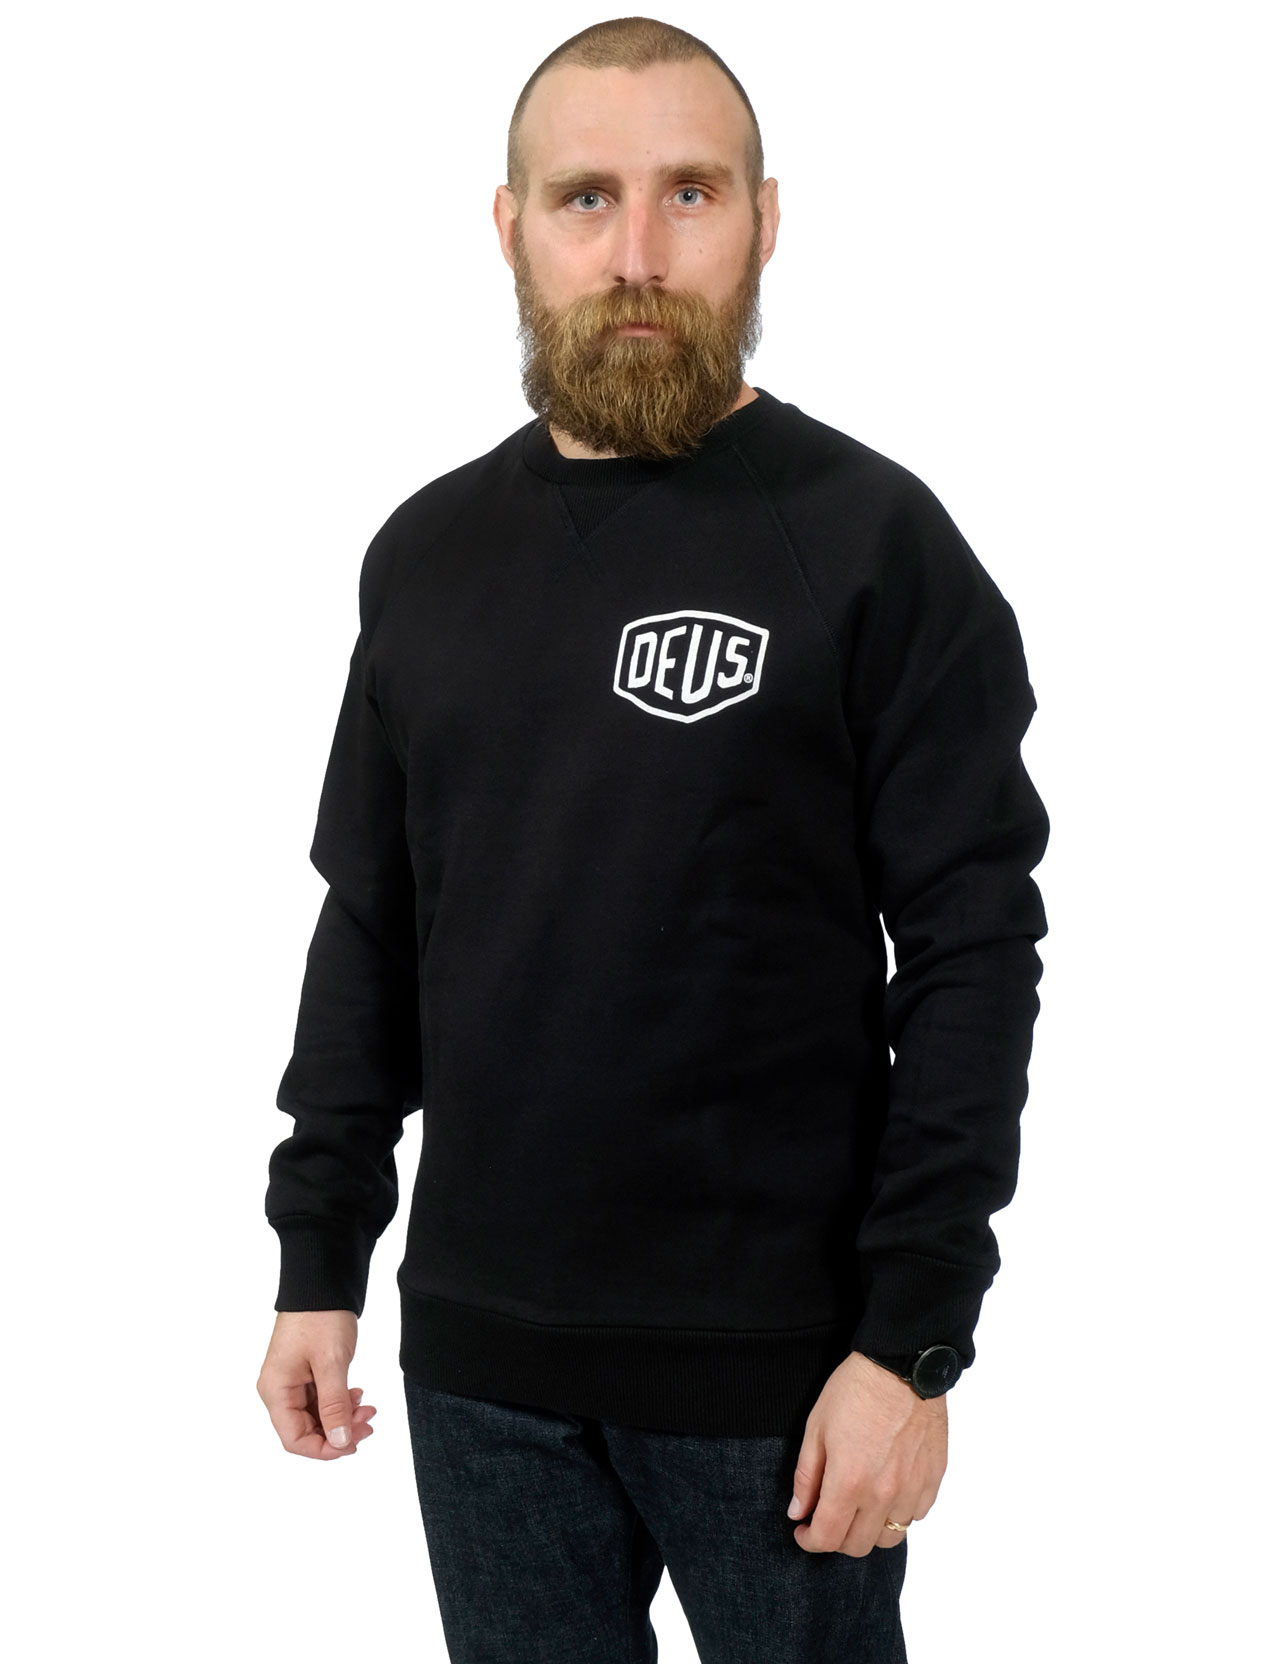 Deus - Berlin Address Crew Sweater - Black